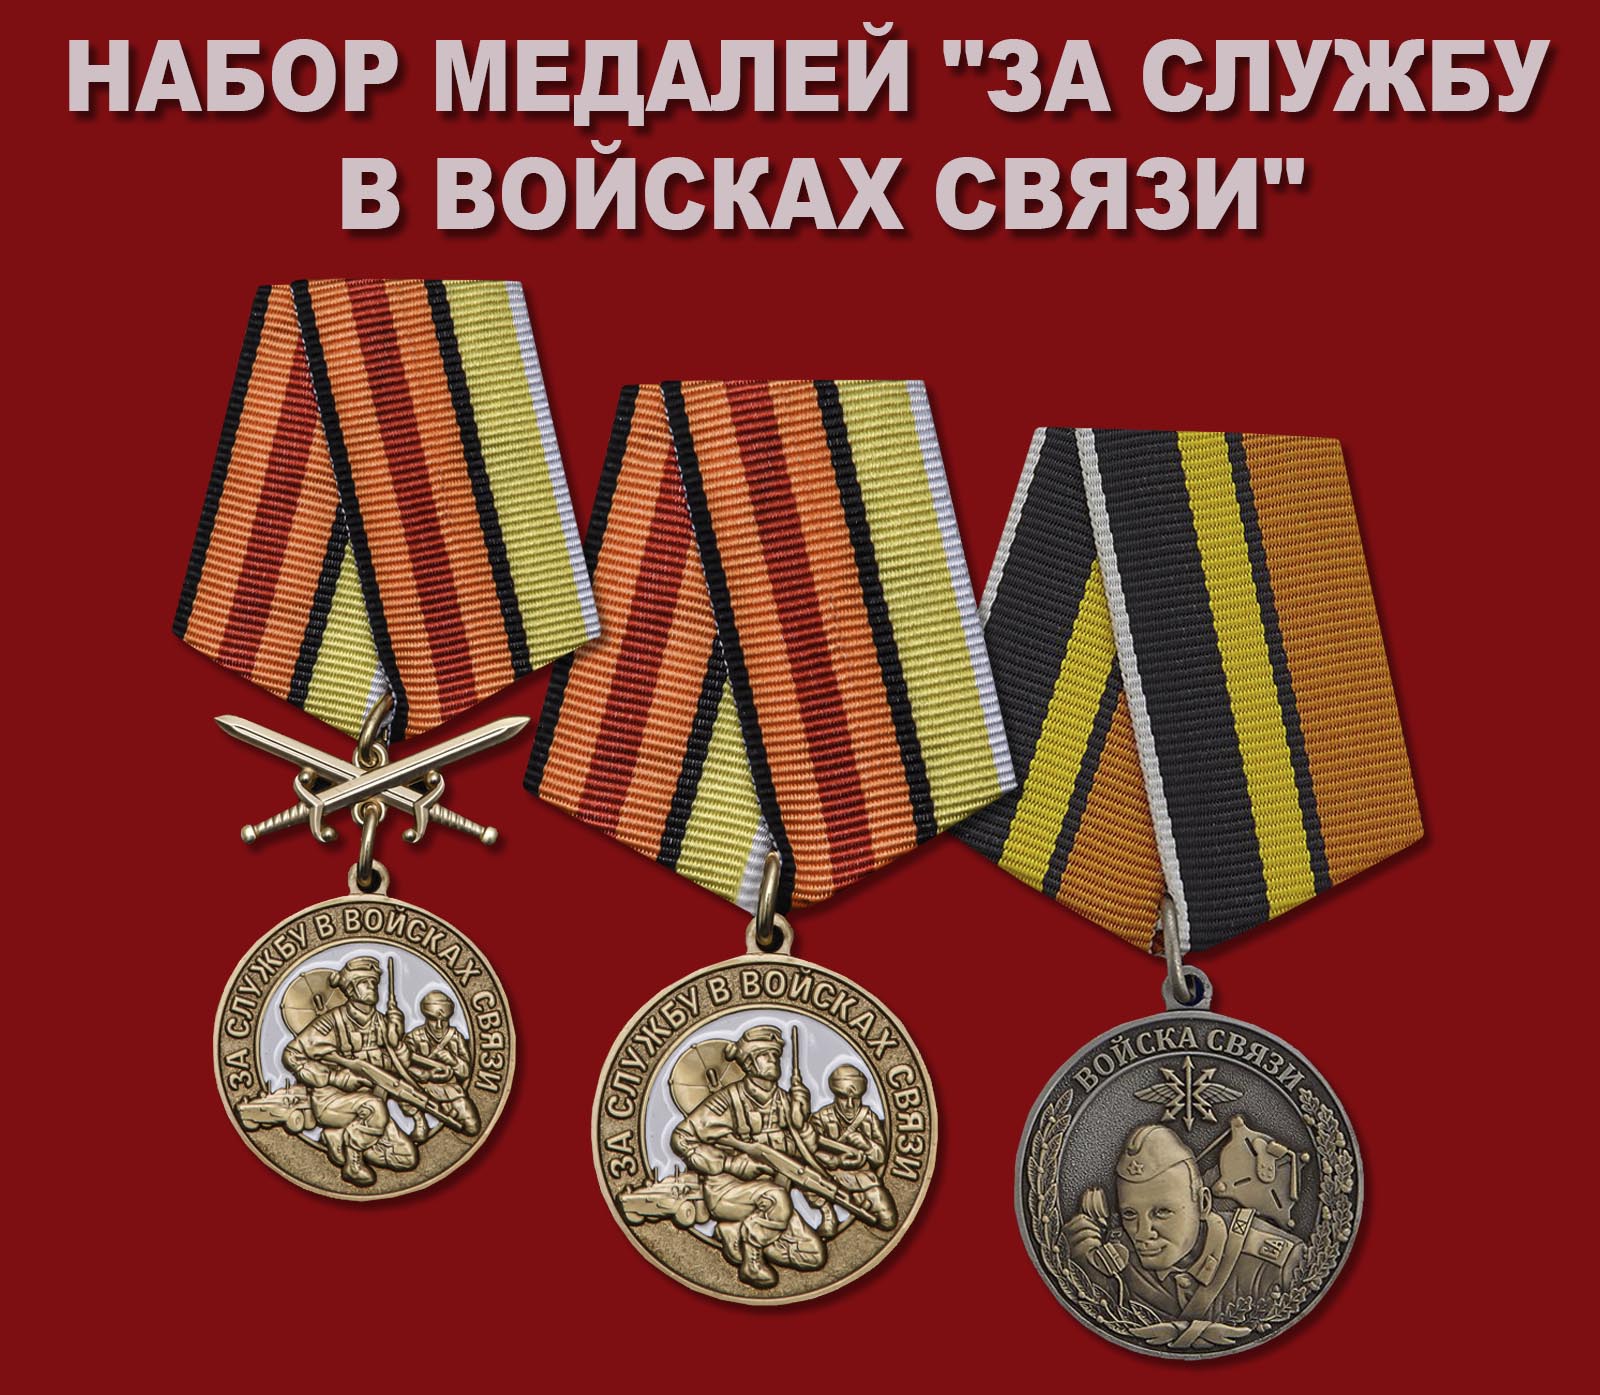 Купить набор медалей "За службу в Войсках связи"